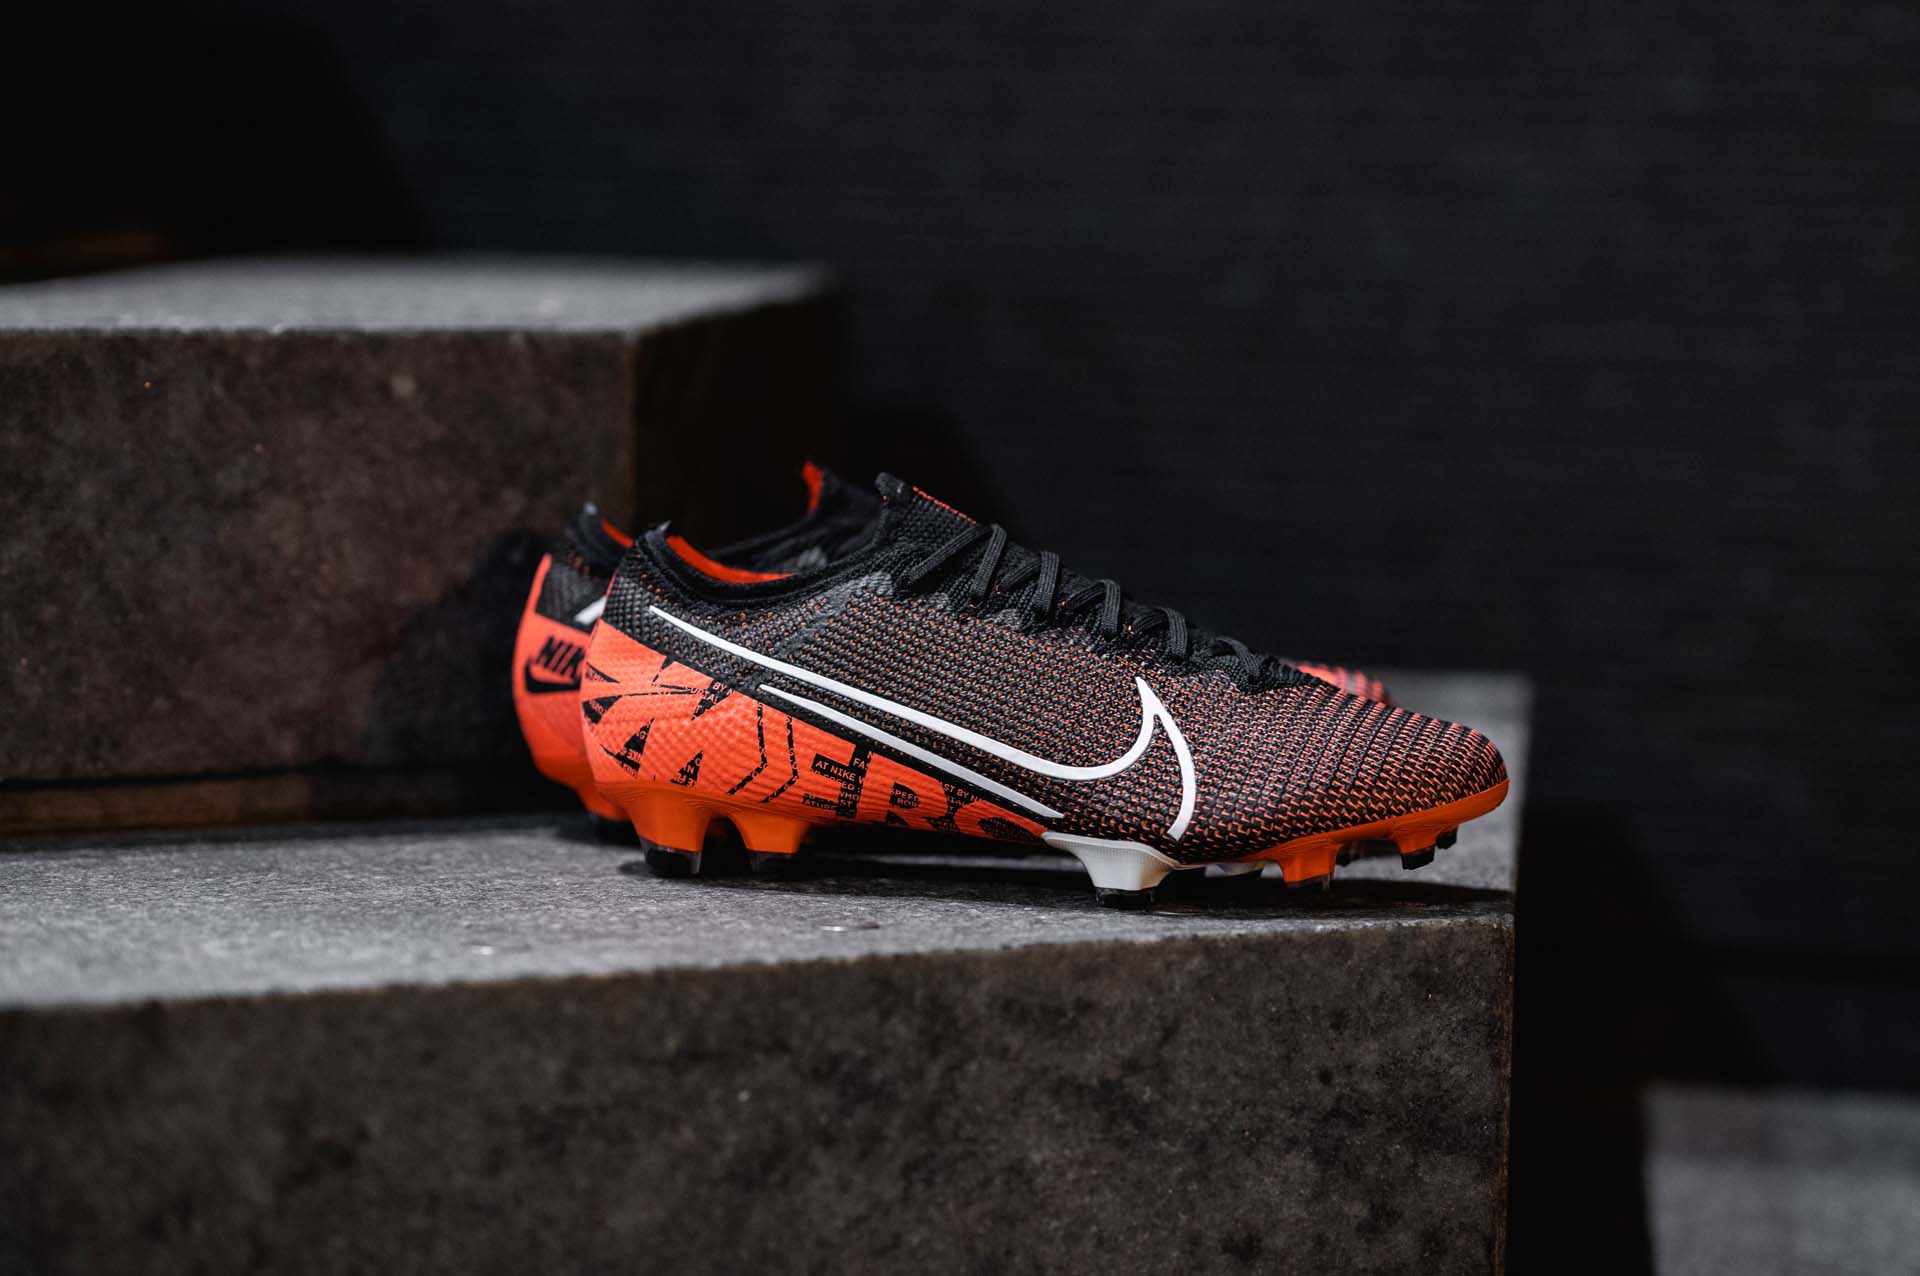 Vẻ đẹp của giày đá bóng chính hãng Nike Mercurial Vapor XIII màu đen cam